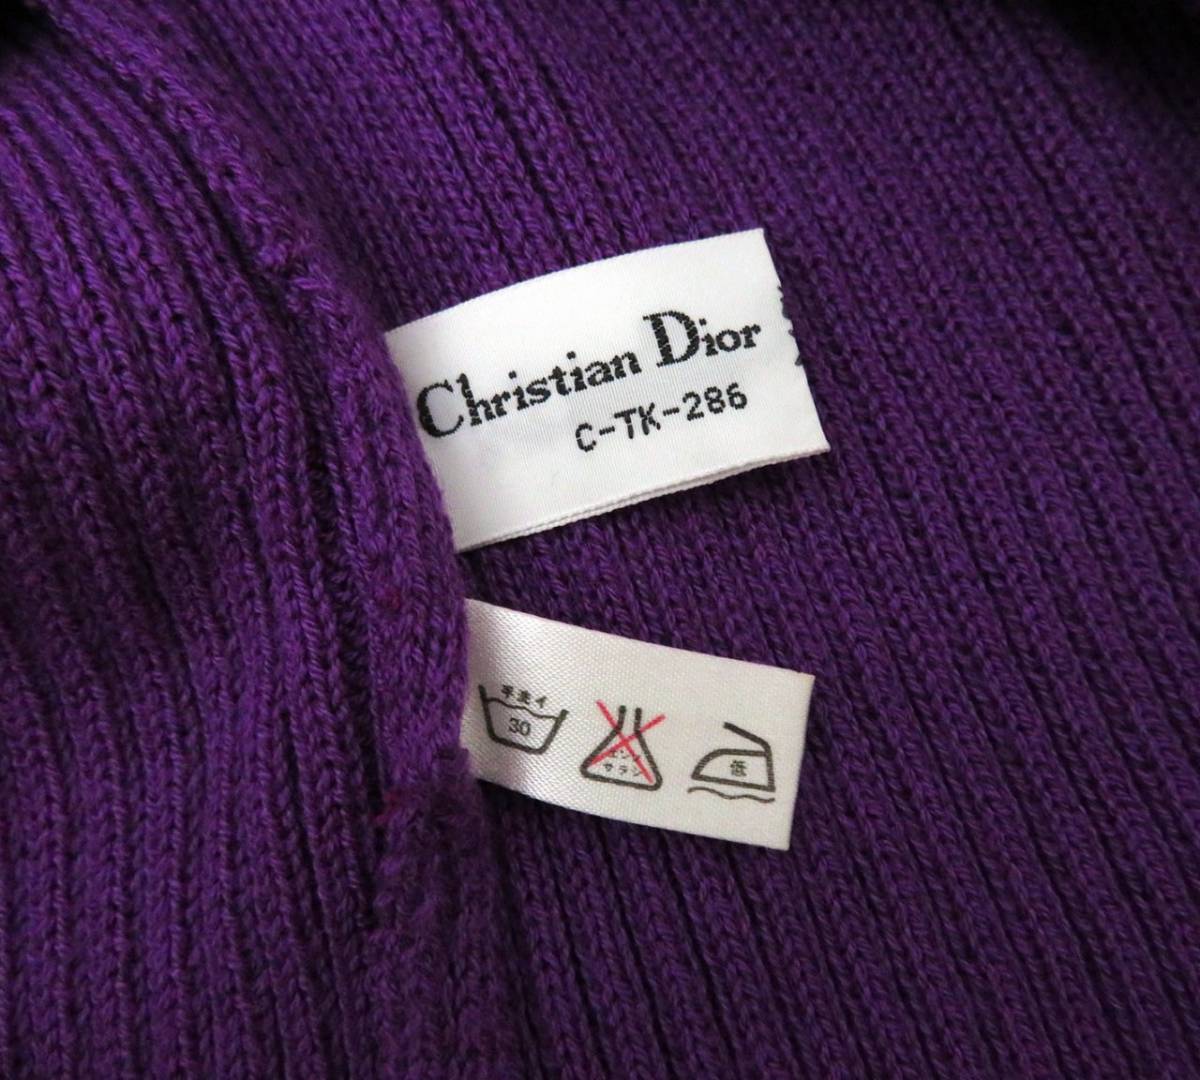 4792 美品 Christian Dior クリスチャンディオール vintage ロゴ刺繍入り 半袖 ニット セーター Tシャツ カットソー 紫  パープル 希少